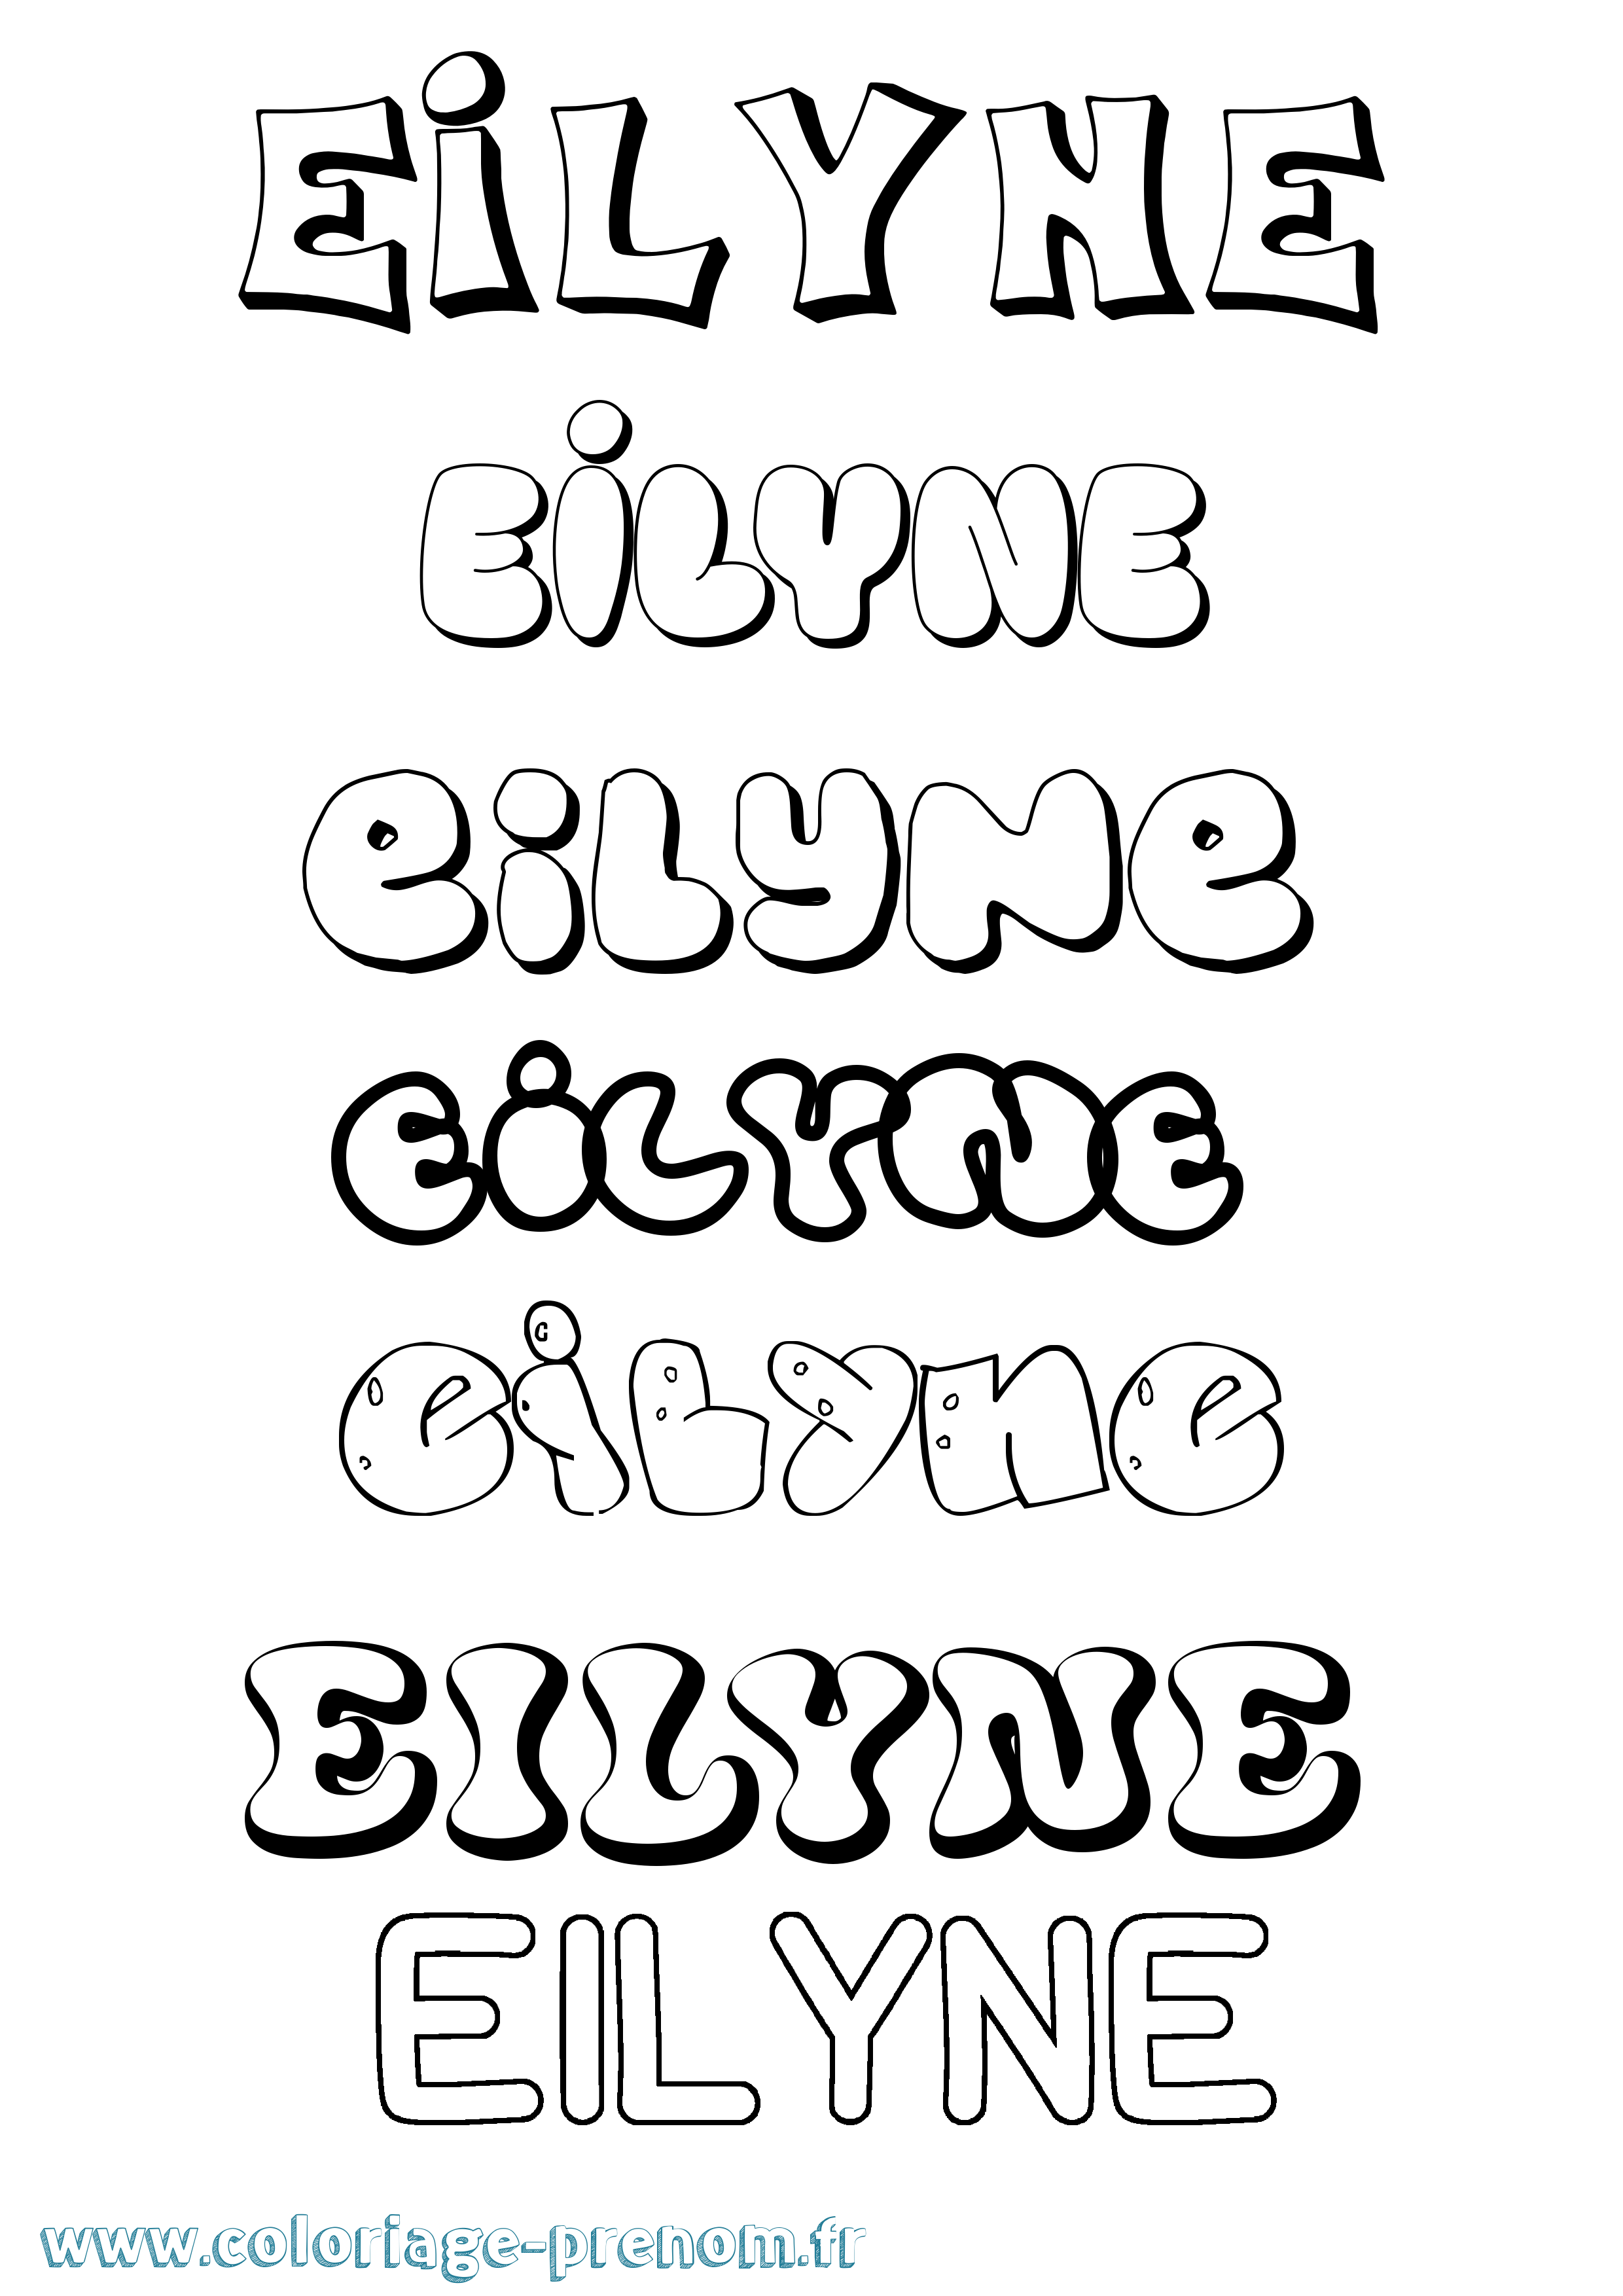 Coloriage prénom Eilyne Bubble